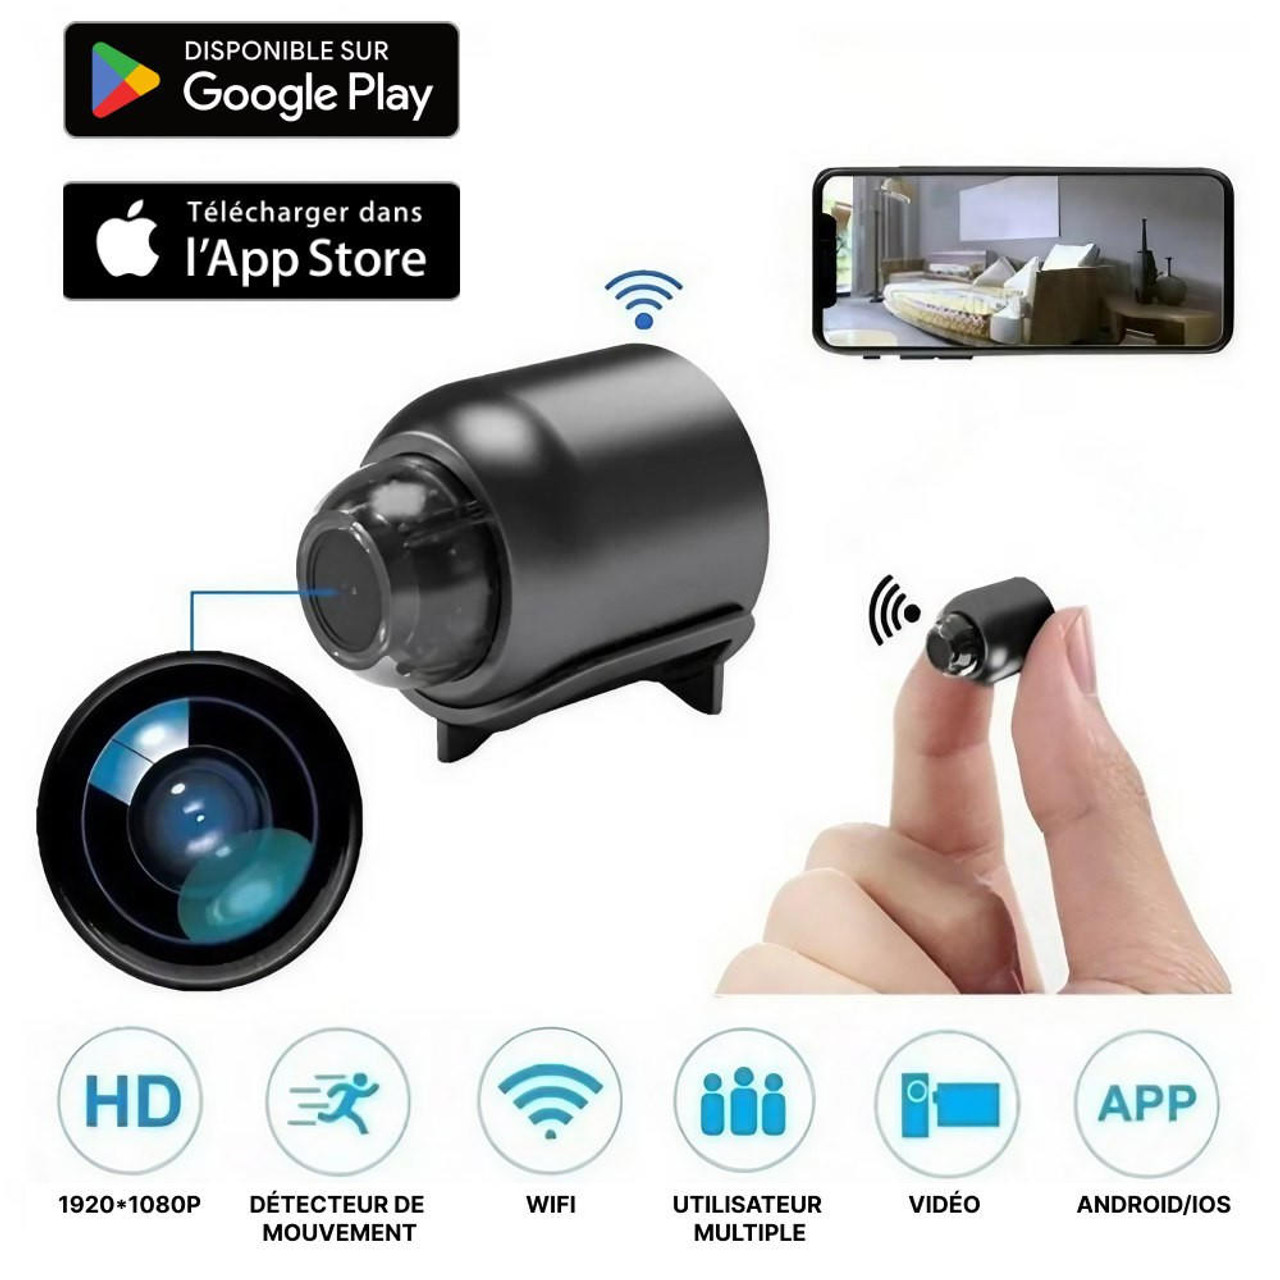 Mini caméra Full HD Wifi pour vos usages privés et professionnels